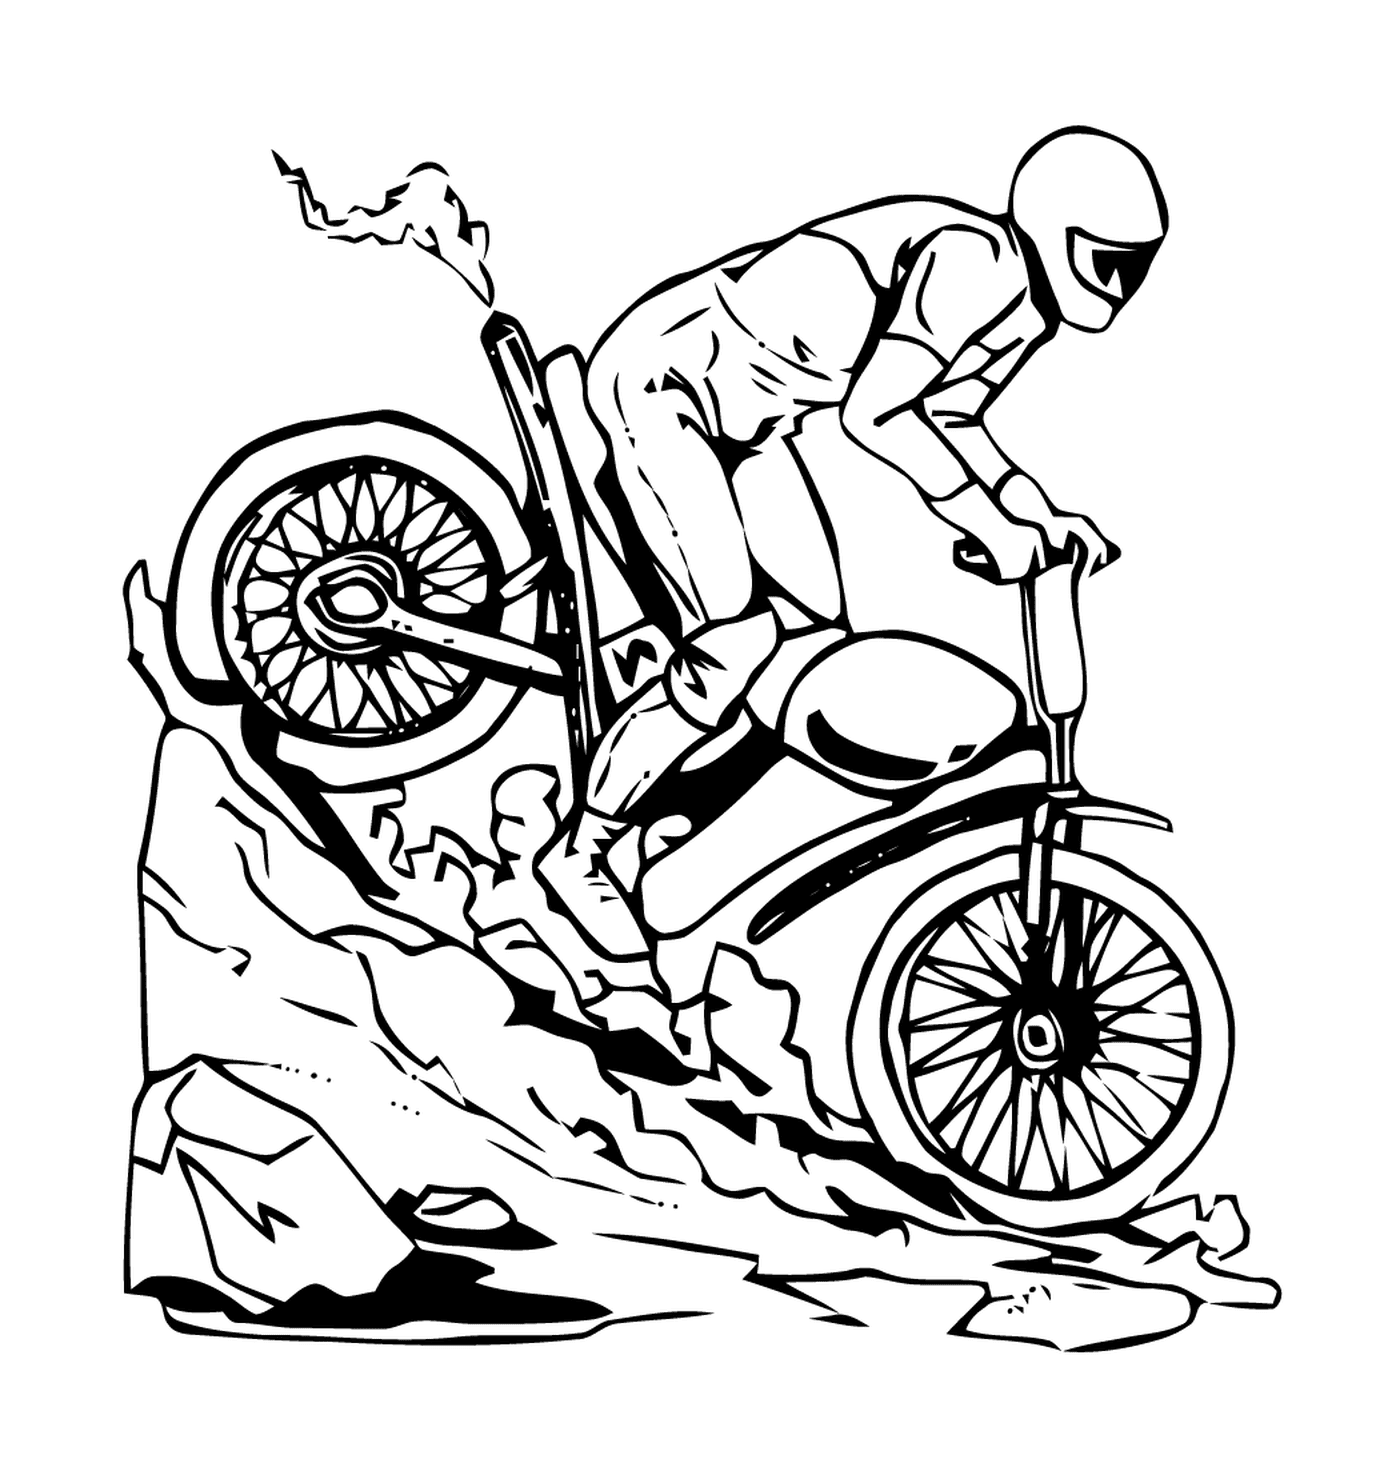  Hombre en una bicicleta bajando una colina 